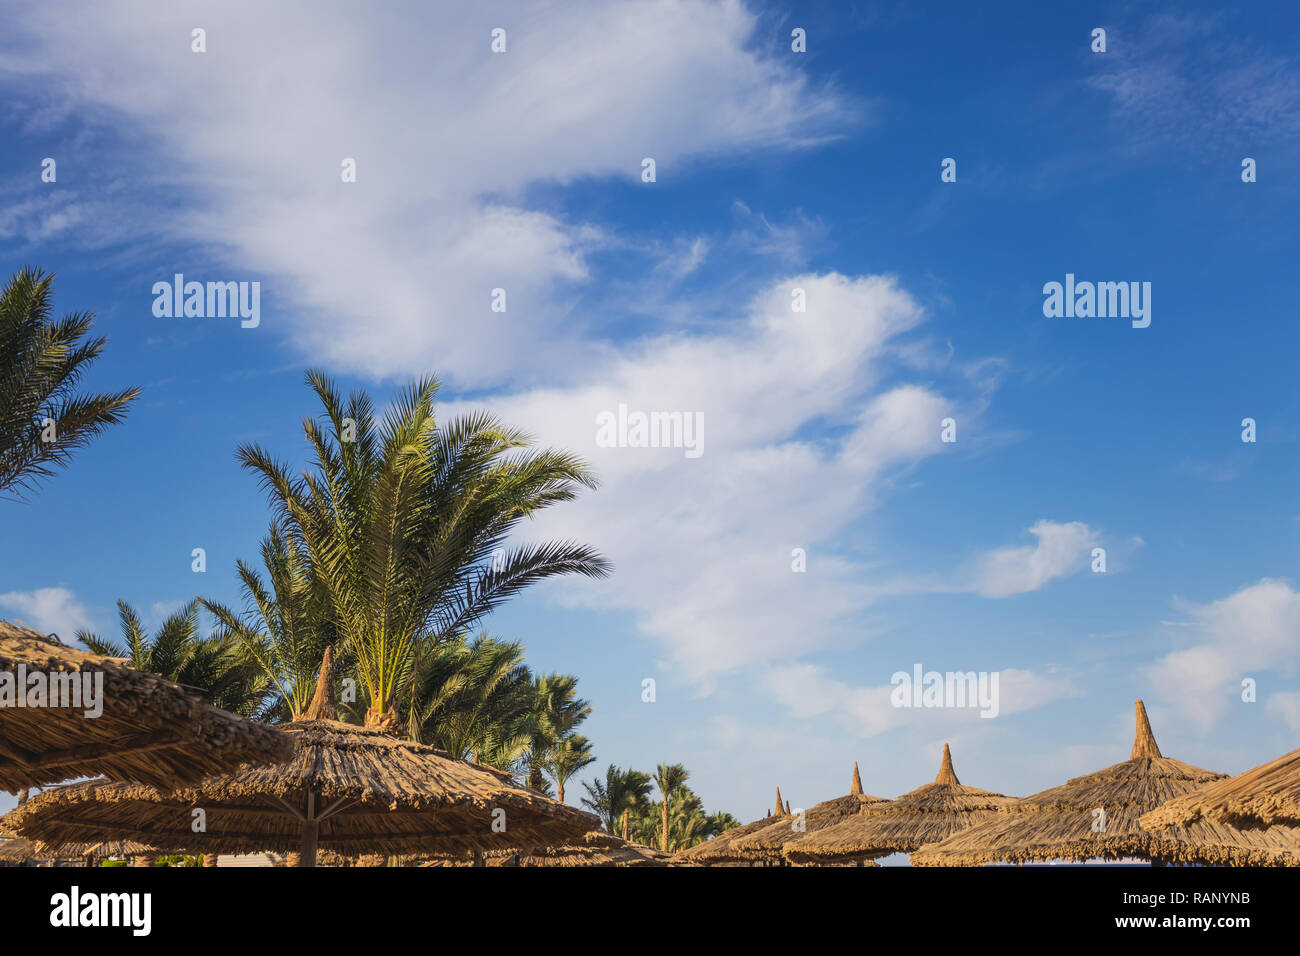 Schönen grünen Palmen am blauen Himmel und Sonnenschirme auf sonnigen Sommer tropischen Strand getrennt. Horizontale Farbfotografie. Stockfoto